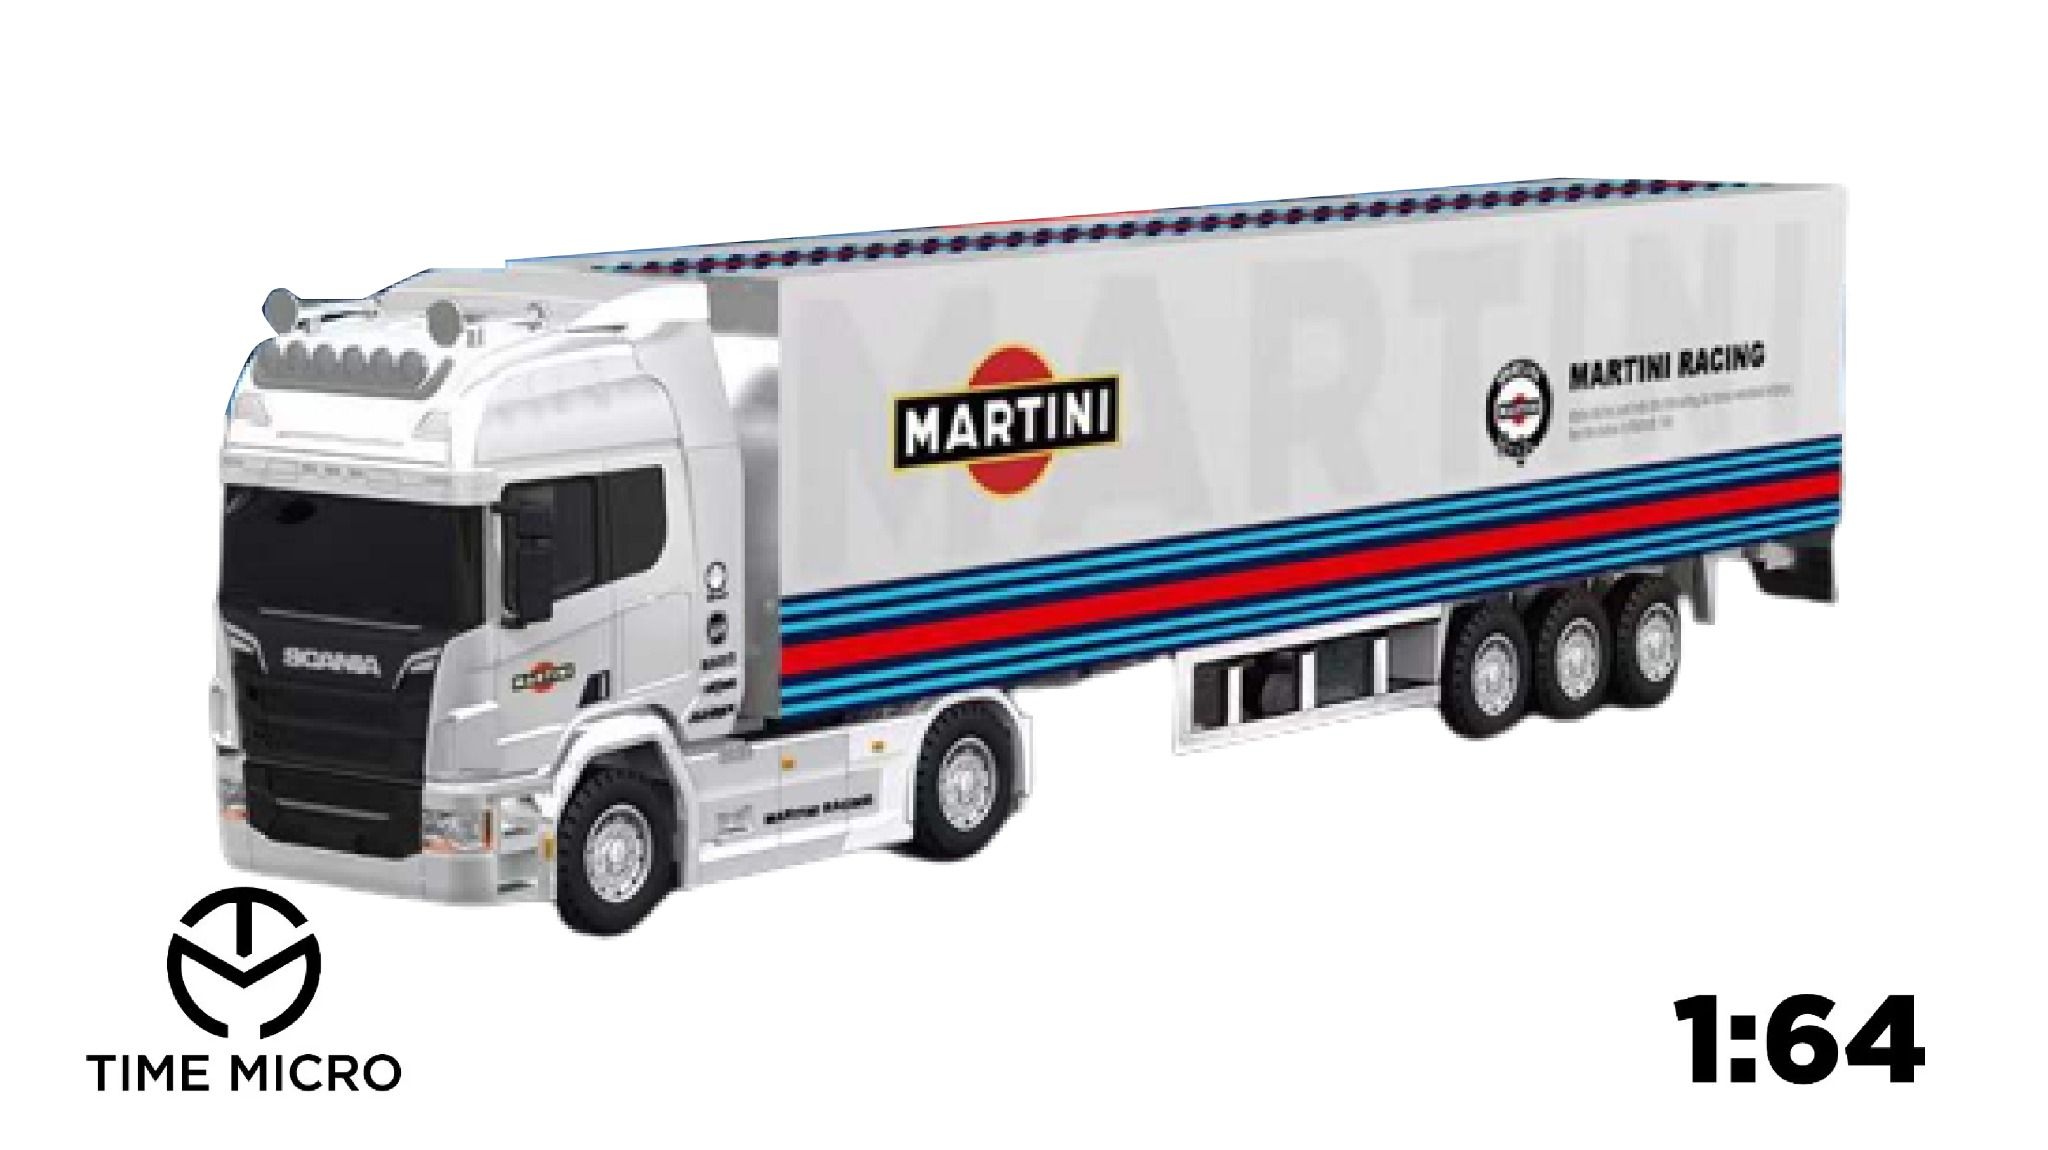  Mô hình xe đầu kéo container Martini racing full kim loại tỉ lệ 1:64 Time micro 